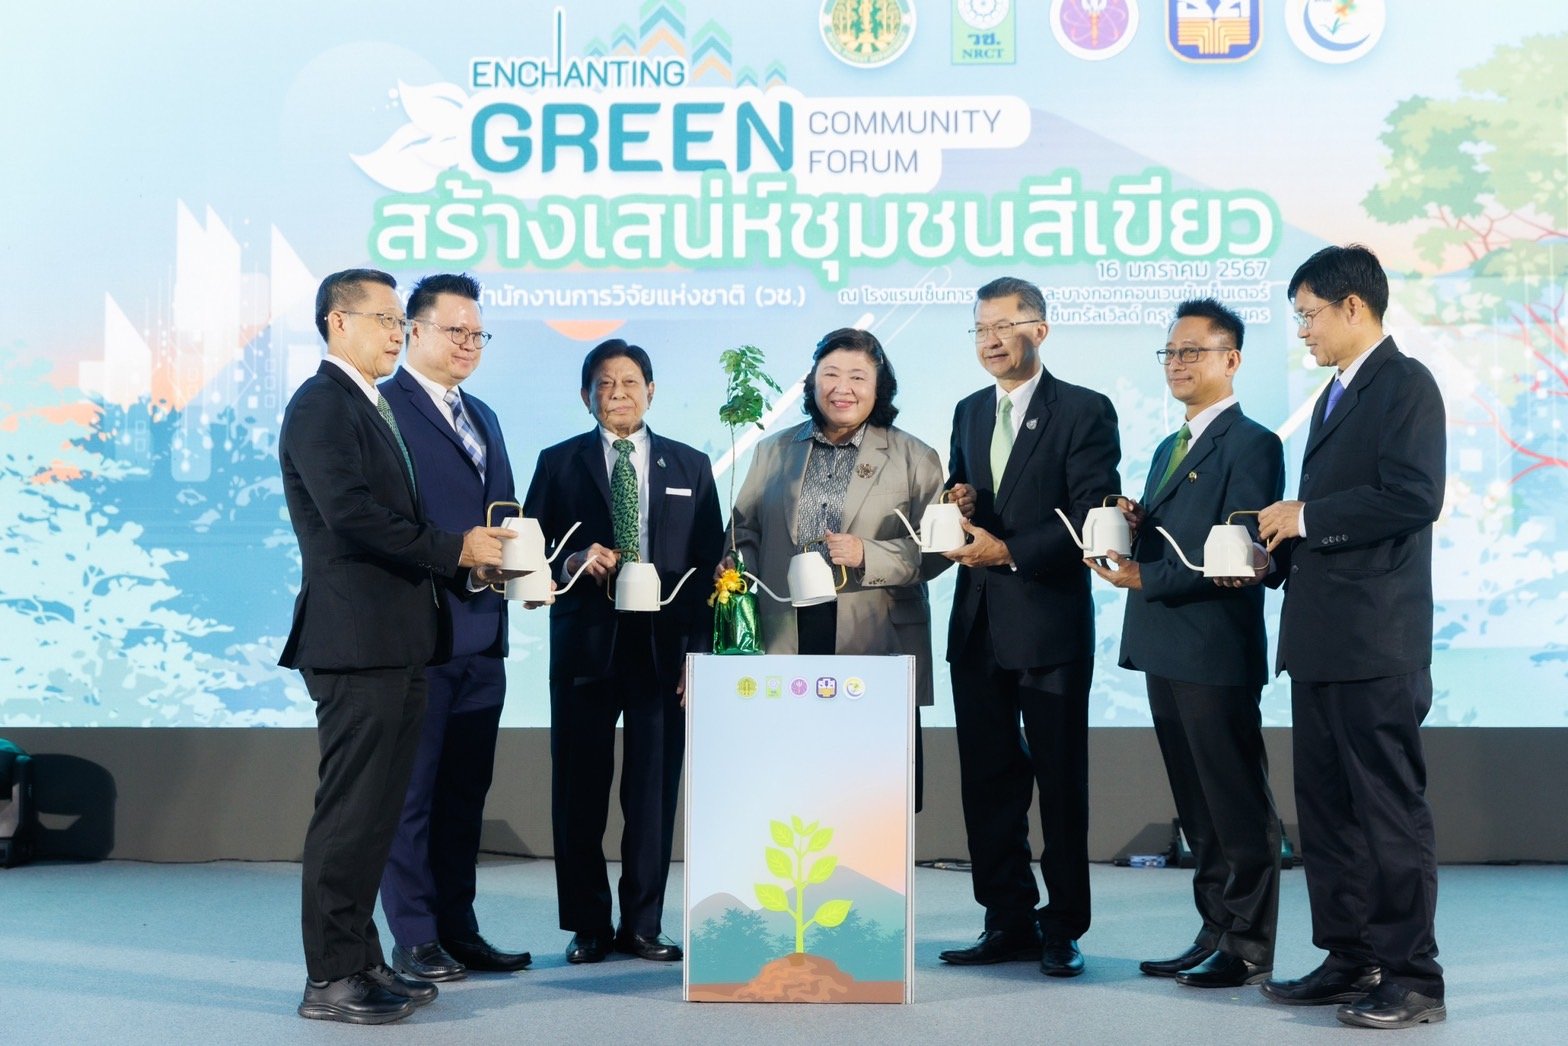 วช. ร่วมกับ ภาคีเครือข่าย จัดงานฟอรั่มไม้มีค่า “สร้างเสน่ห์ชุมชนสีเขียว: Enchanting Green Community” ผสานพลังความร่วมมือเพื่อสนับสนุน “ไม้มีค่า” ให้เกิดการเพิ่มพื้นที่ป่าไม้ของไทย